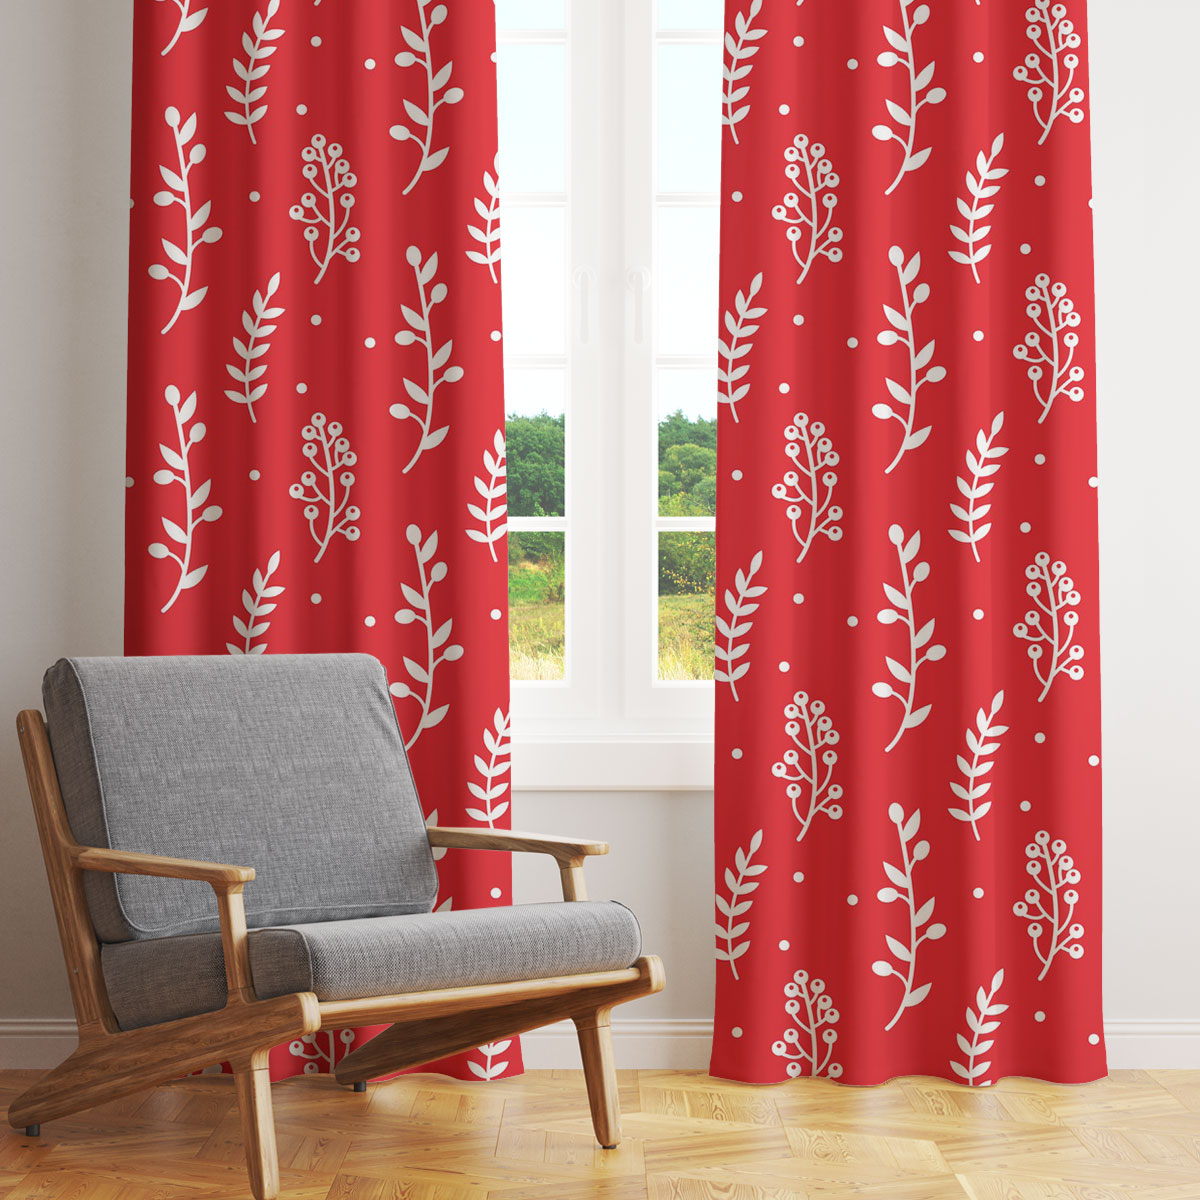 Christmas Mistletoe And Leaf, Mistletoe Clipart On Red Window Curtain